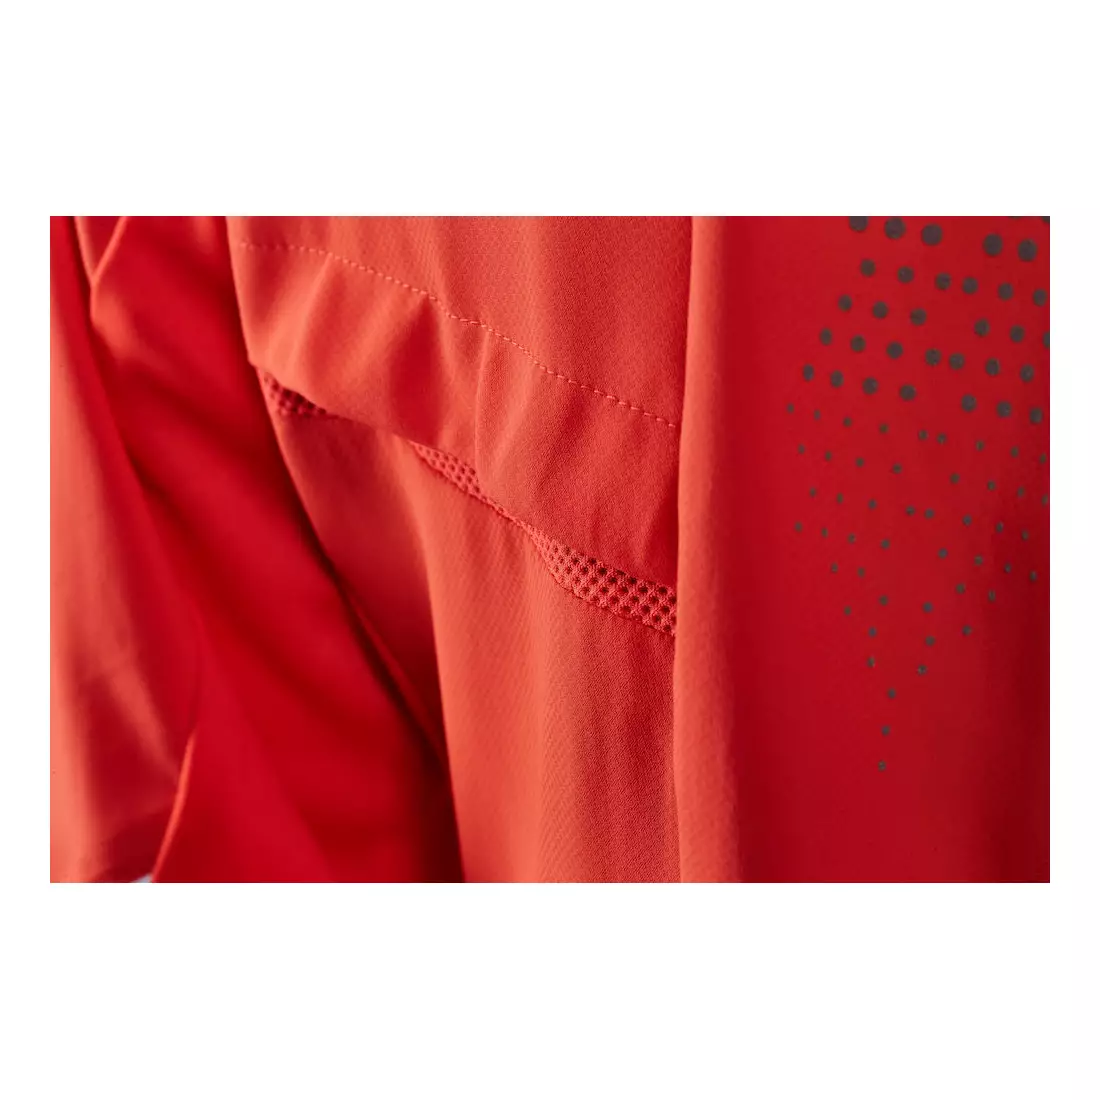 CRAFT BRILLIANT 2.0 lehká dámská běžecká bunda 1904306-1825 (fluorescenční růžová)